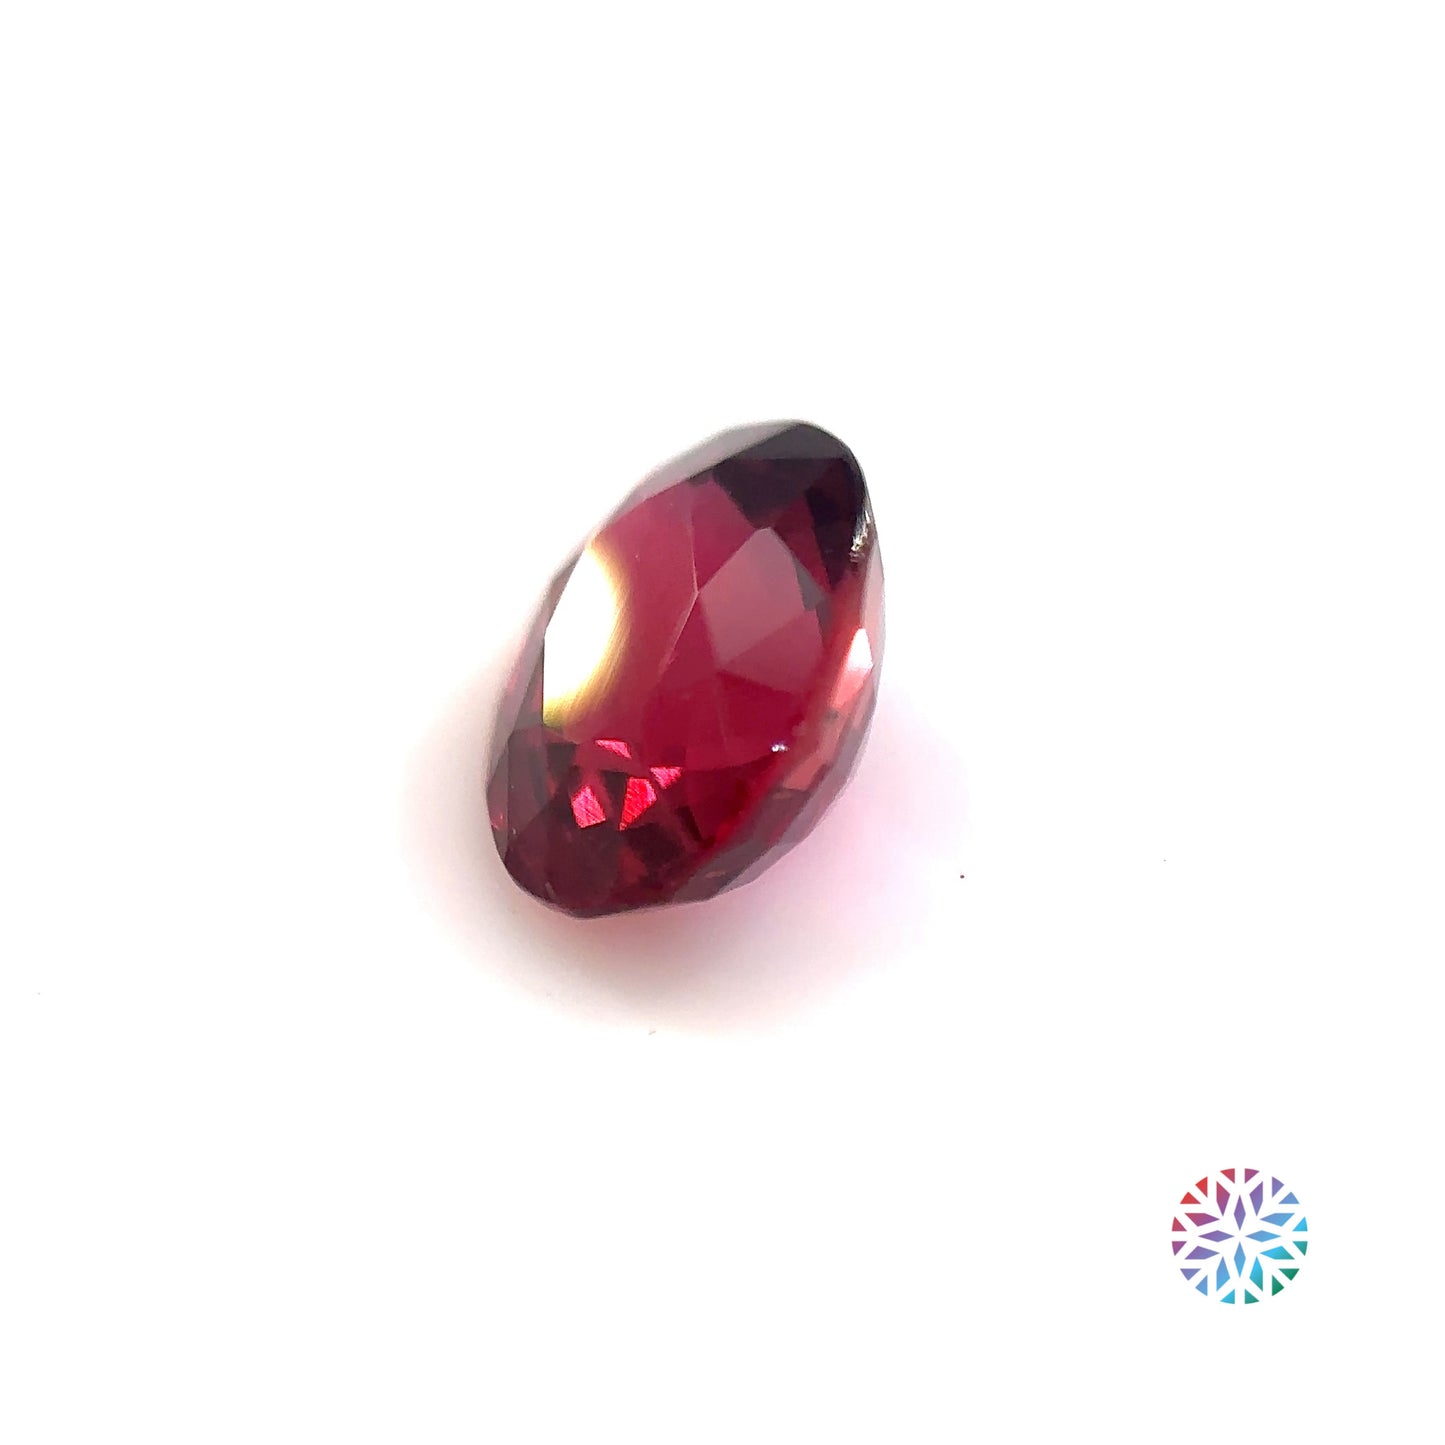 Ruby- Oval, 2.16ct, 8.15 x 6.6 x 4.8mm, (C), (N)